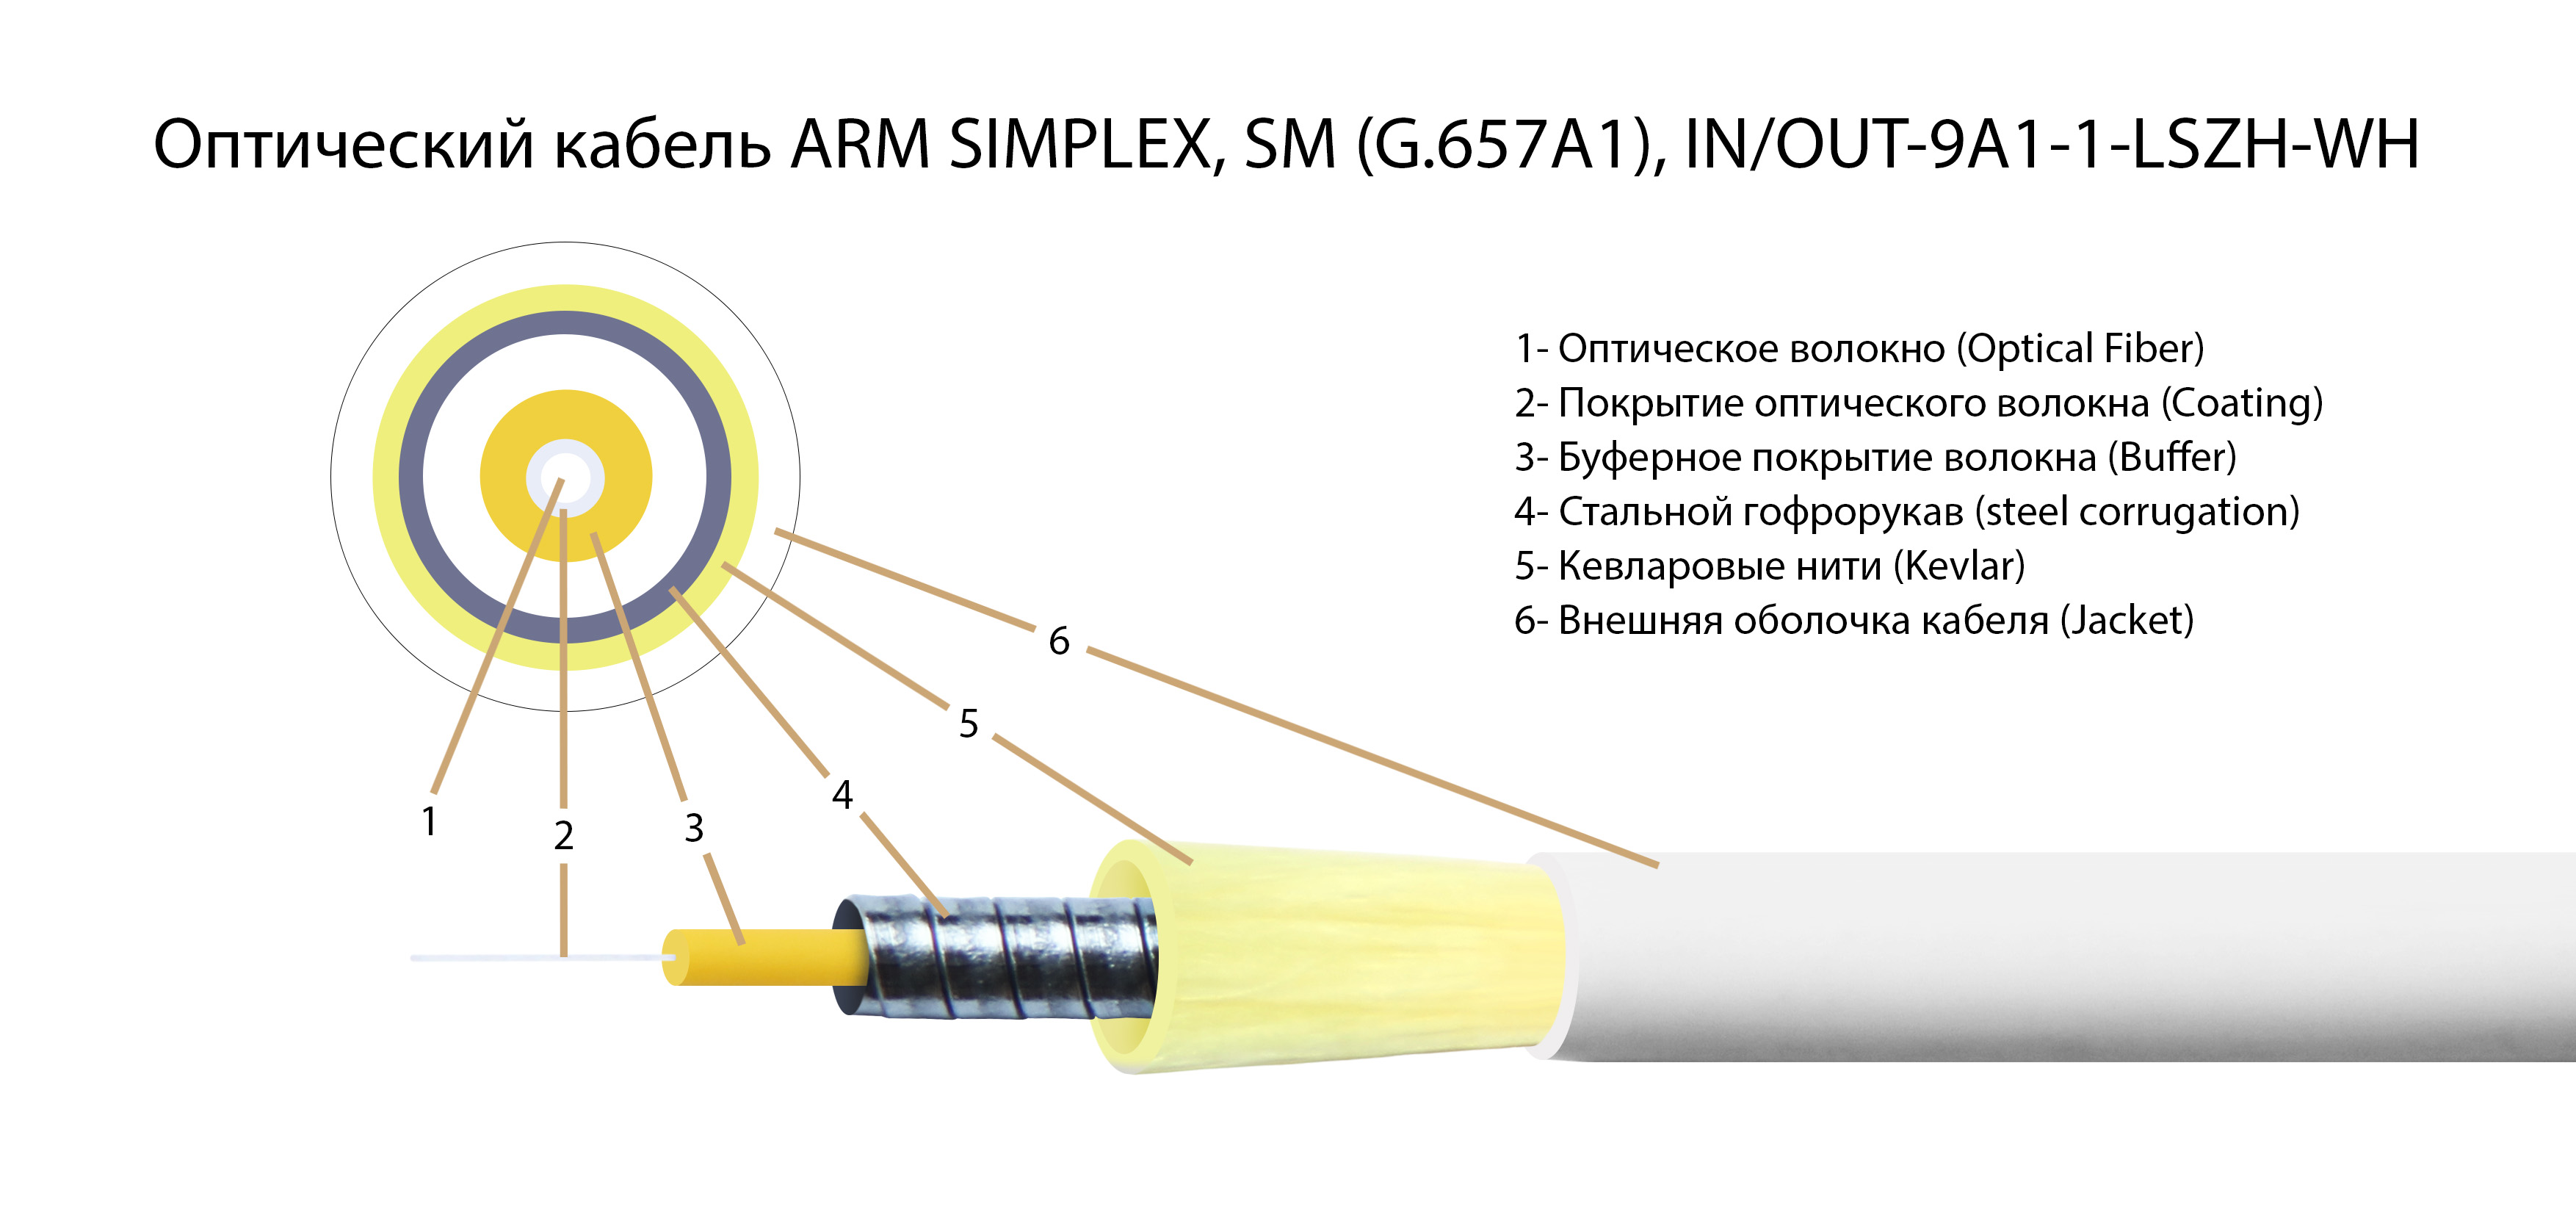  -ARM-3,0-FC/APC-FC/APC-SM-0.5-LSZH    simplex 2FC/APC-2FC/APC 9/125 (G657A1)  SM (3.0) LSZH,  0,5